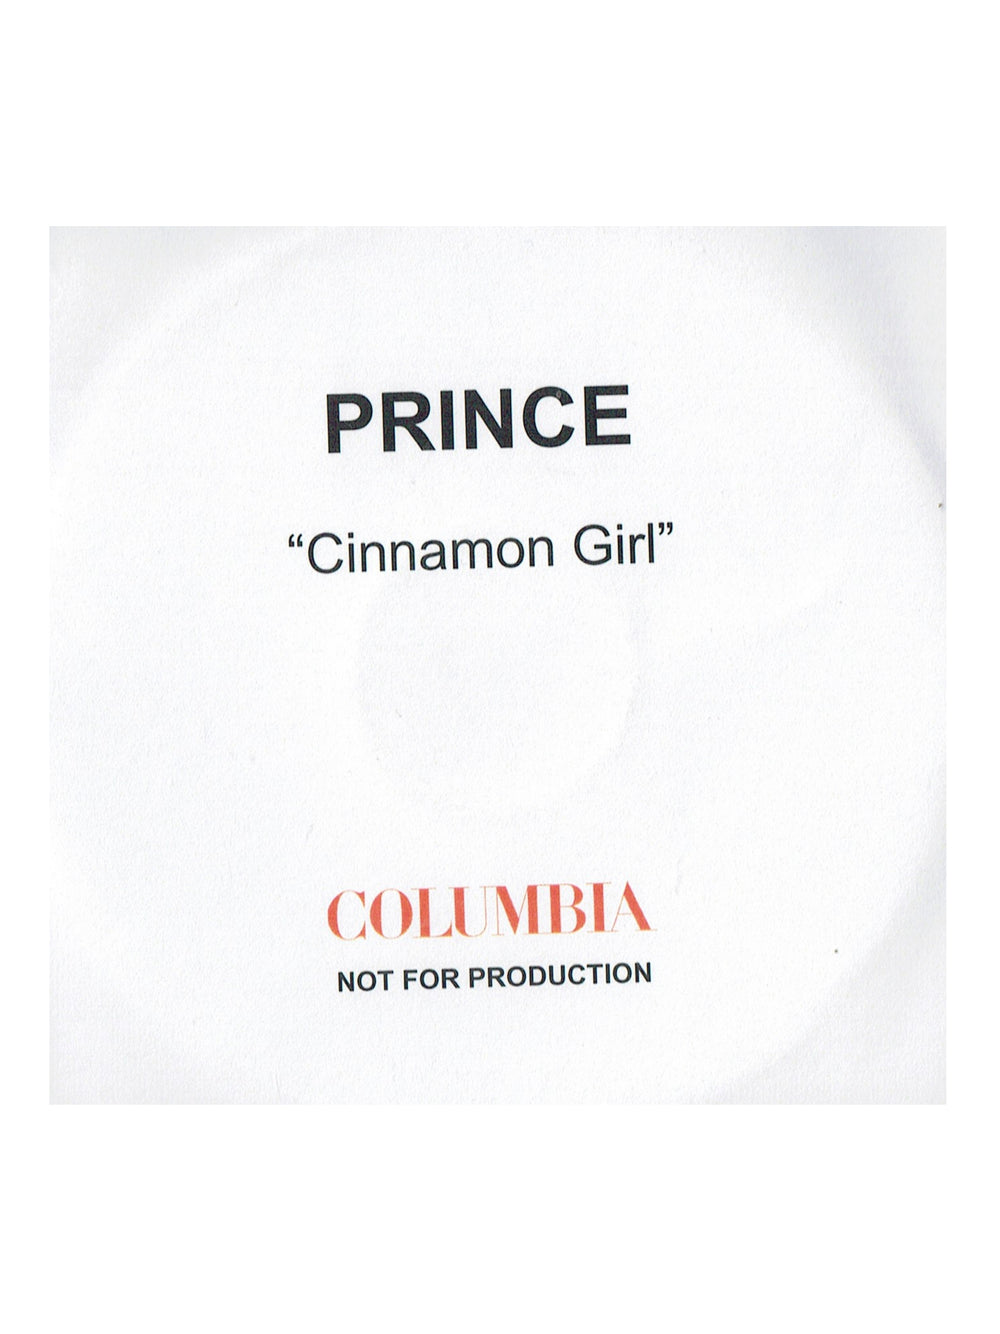 Prince – Cinnamon Girl 1 Track CD Single